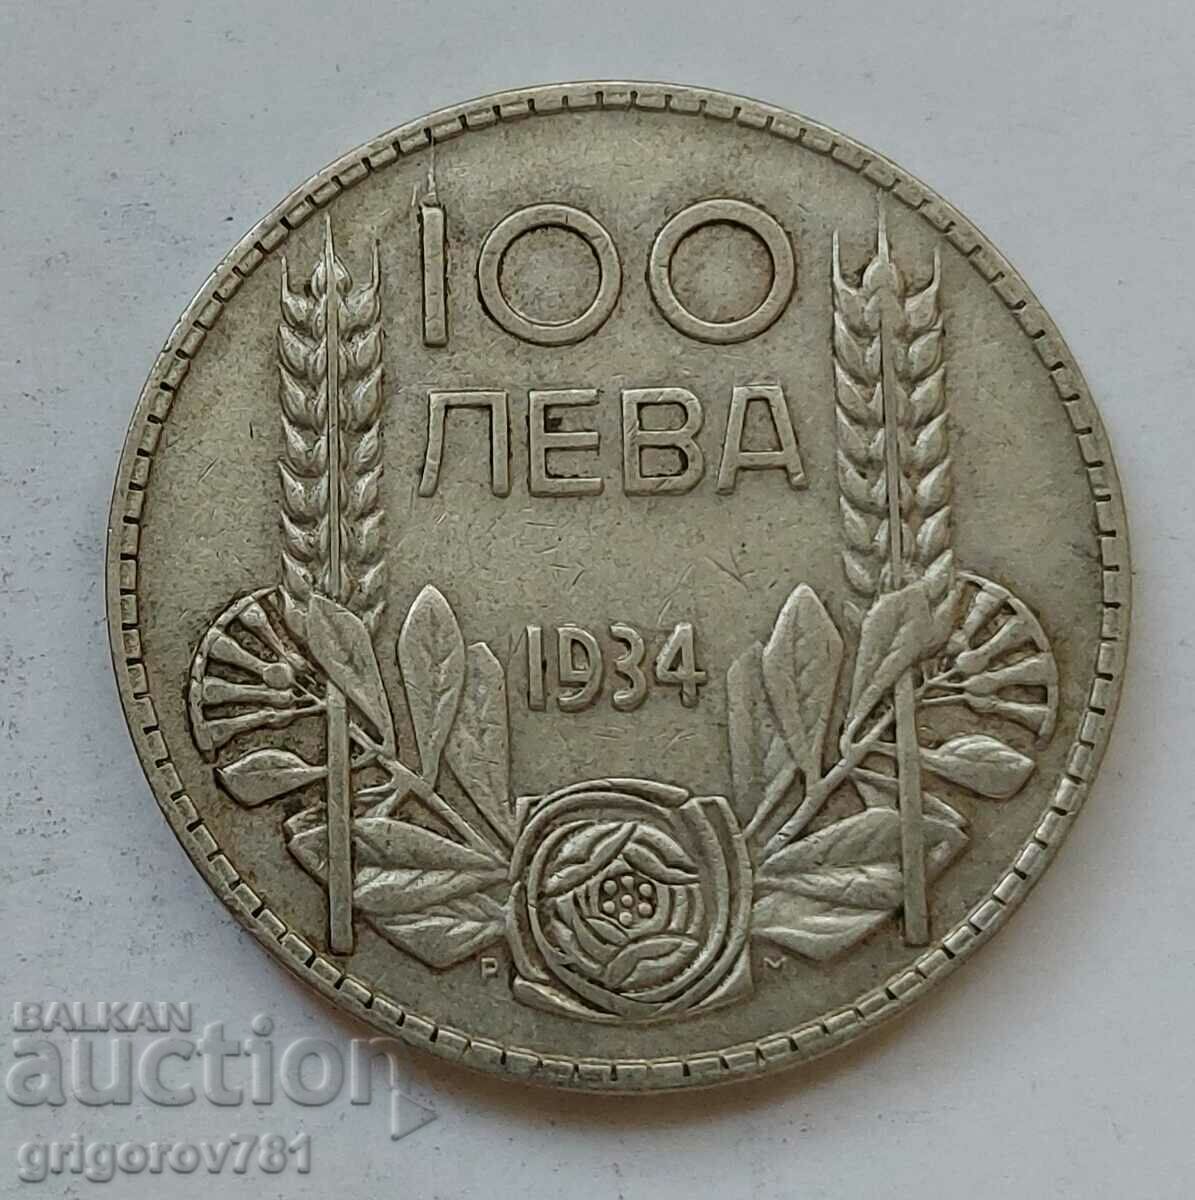 100 leva silver Bulgaria 1934 - silver coin #154